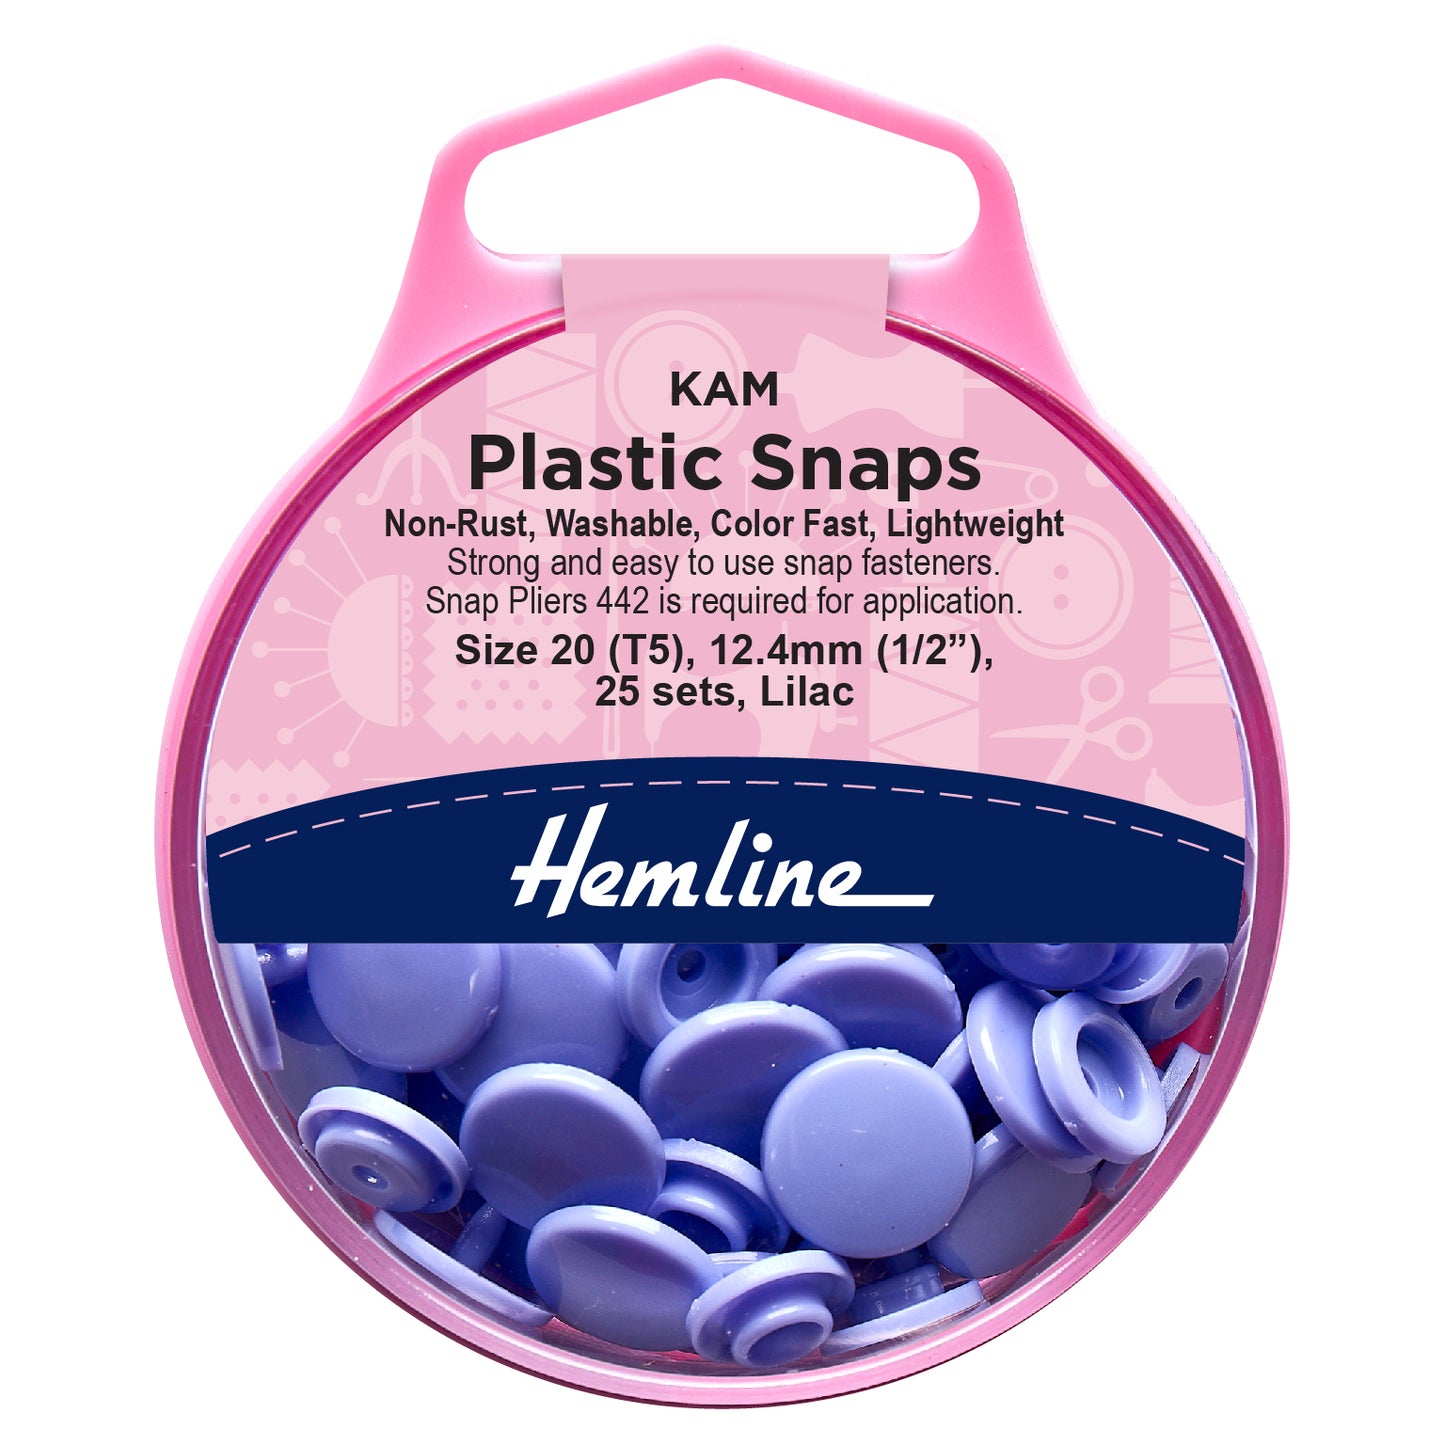 KAM Plastic Snaps: 25 x 12.4mm Sets 